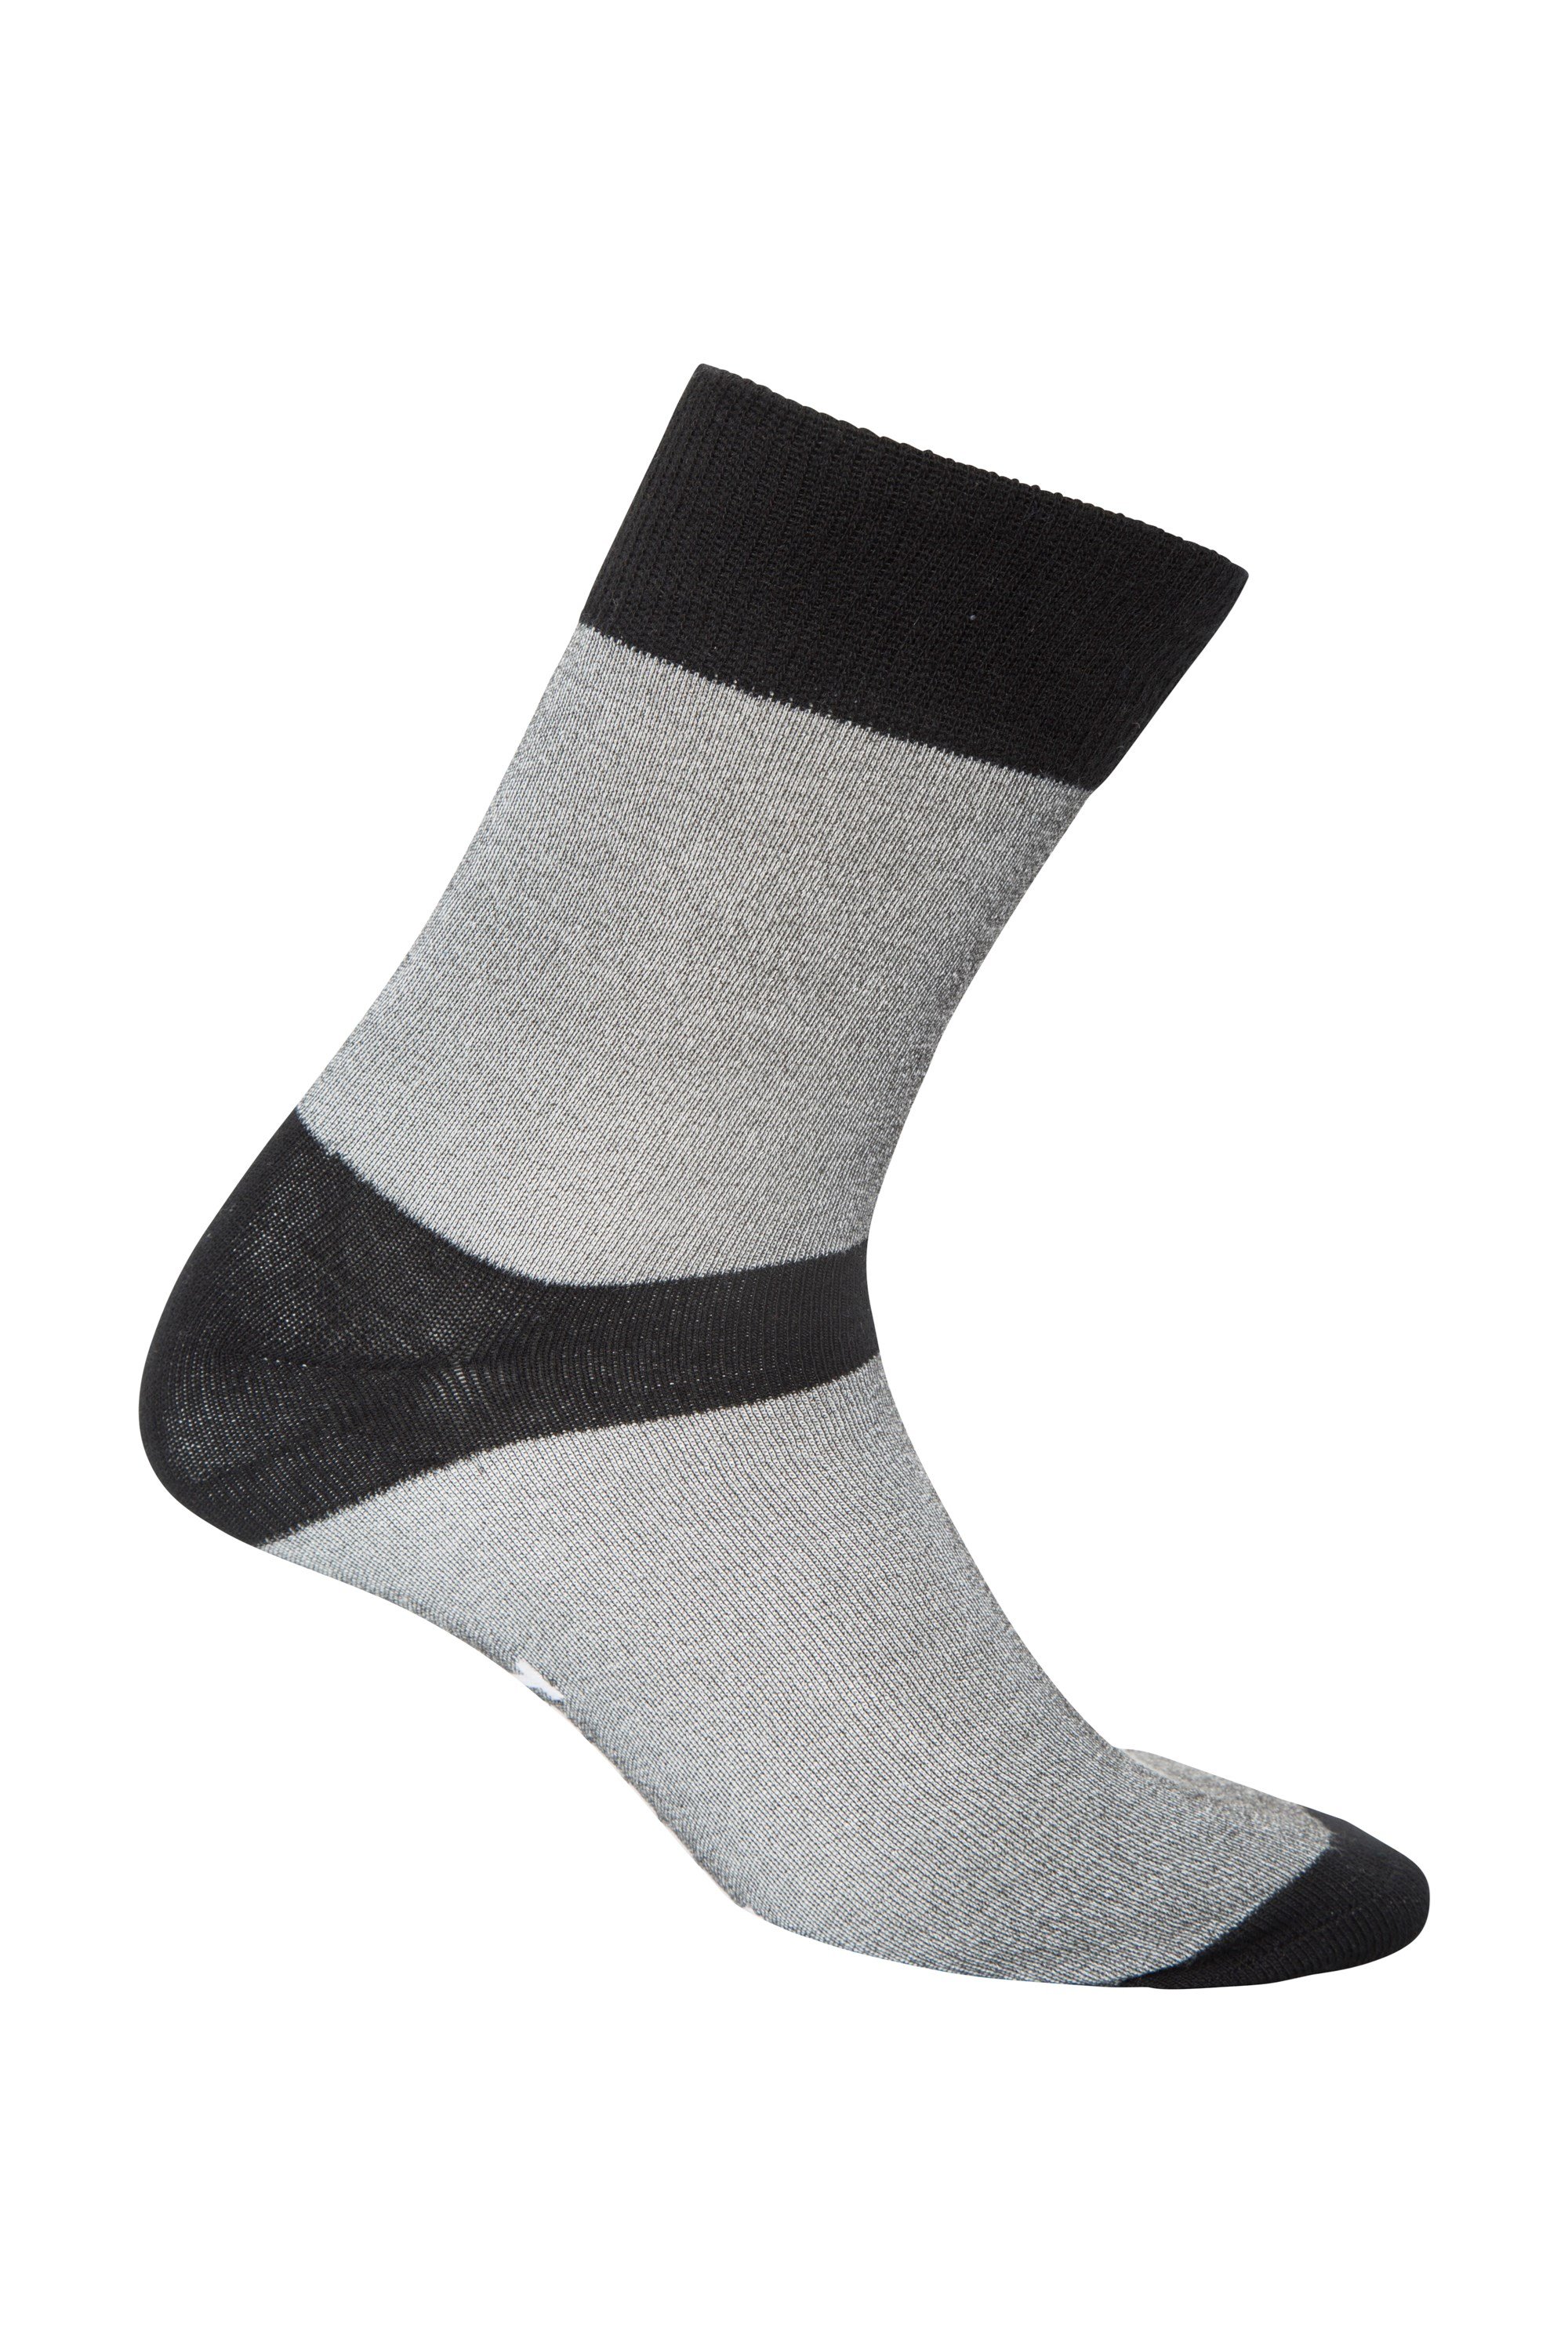 IsoCool Liner Socks - 2 Pack - Black